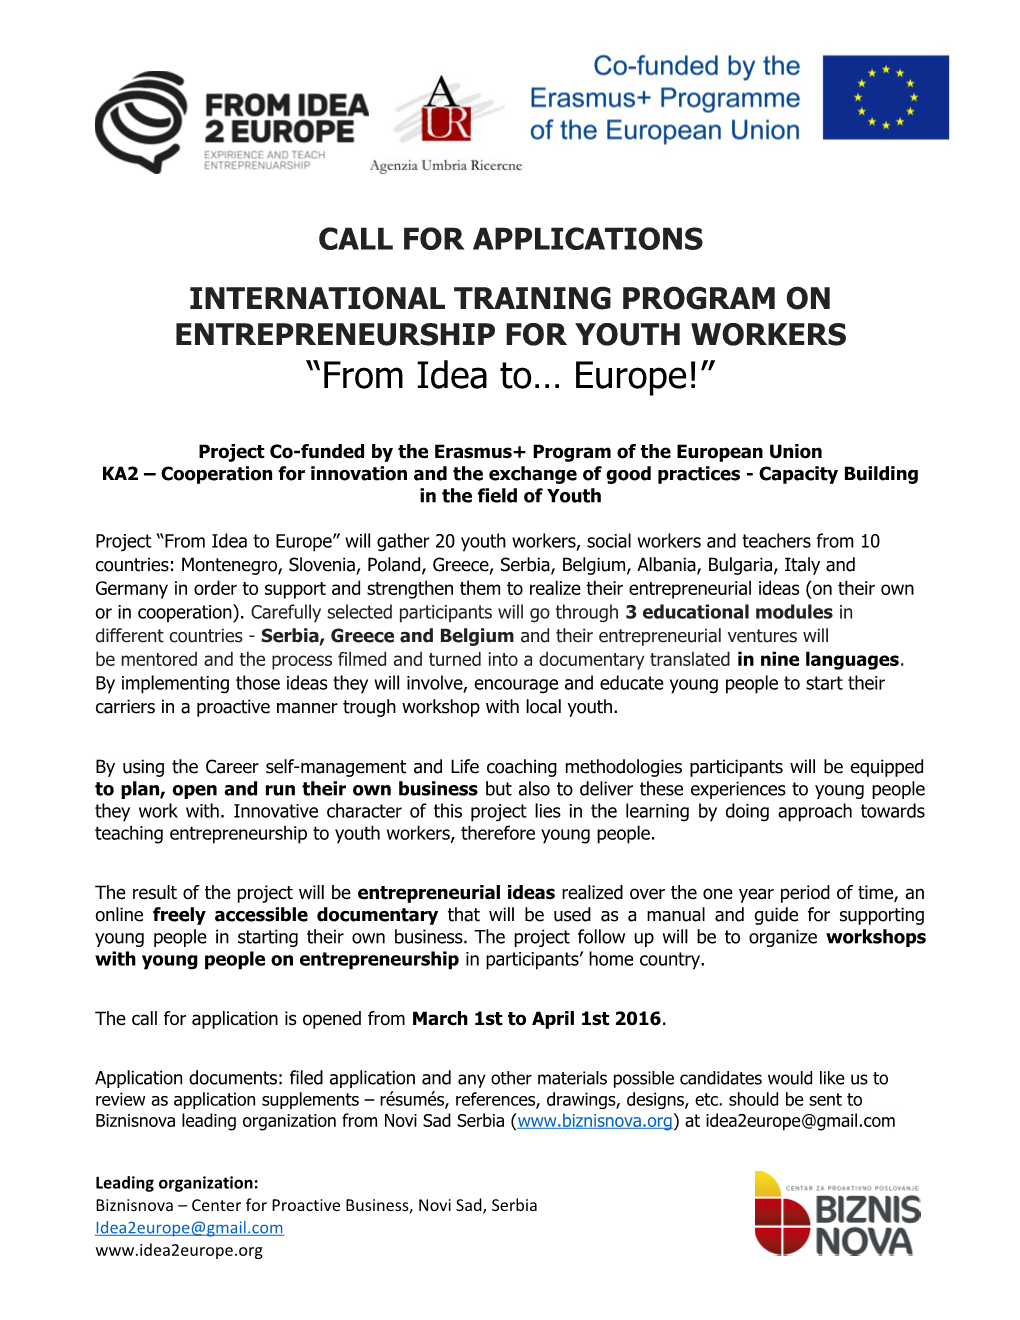 International Training Program on Entrepreneurship for Youth Workers